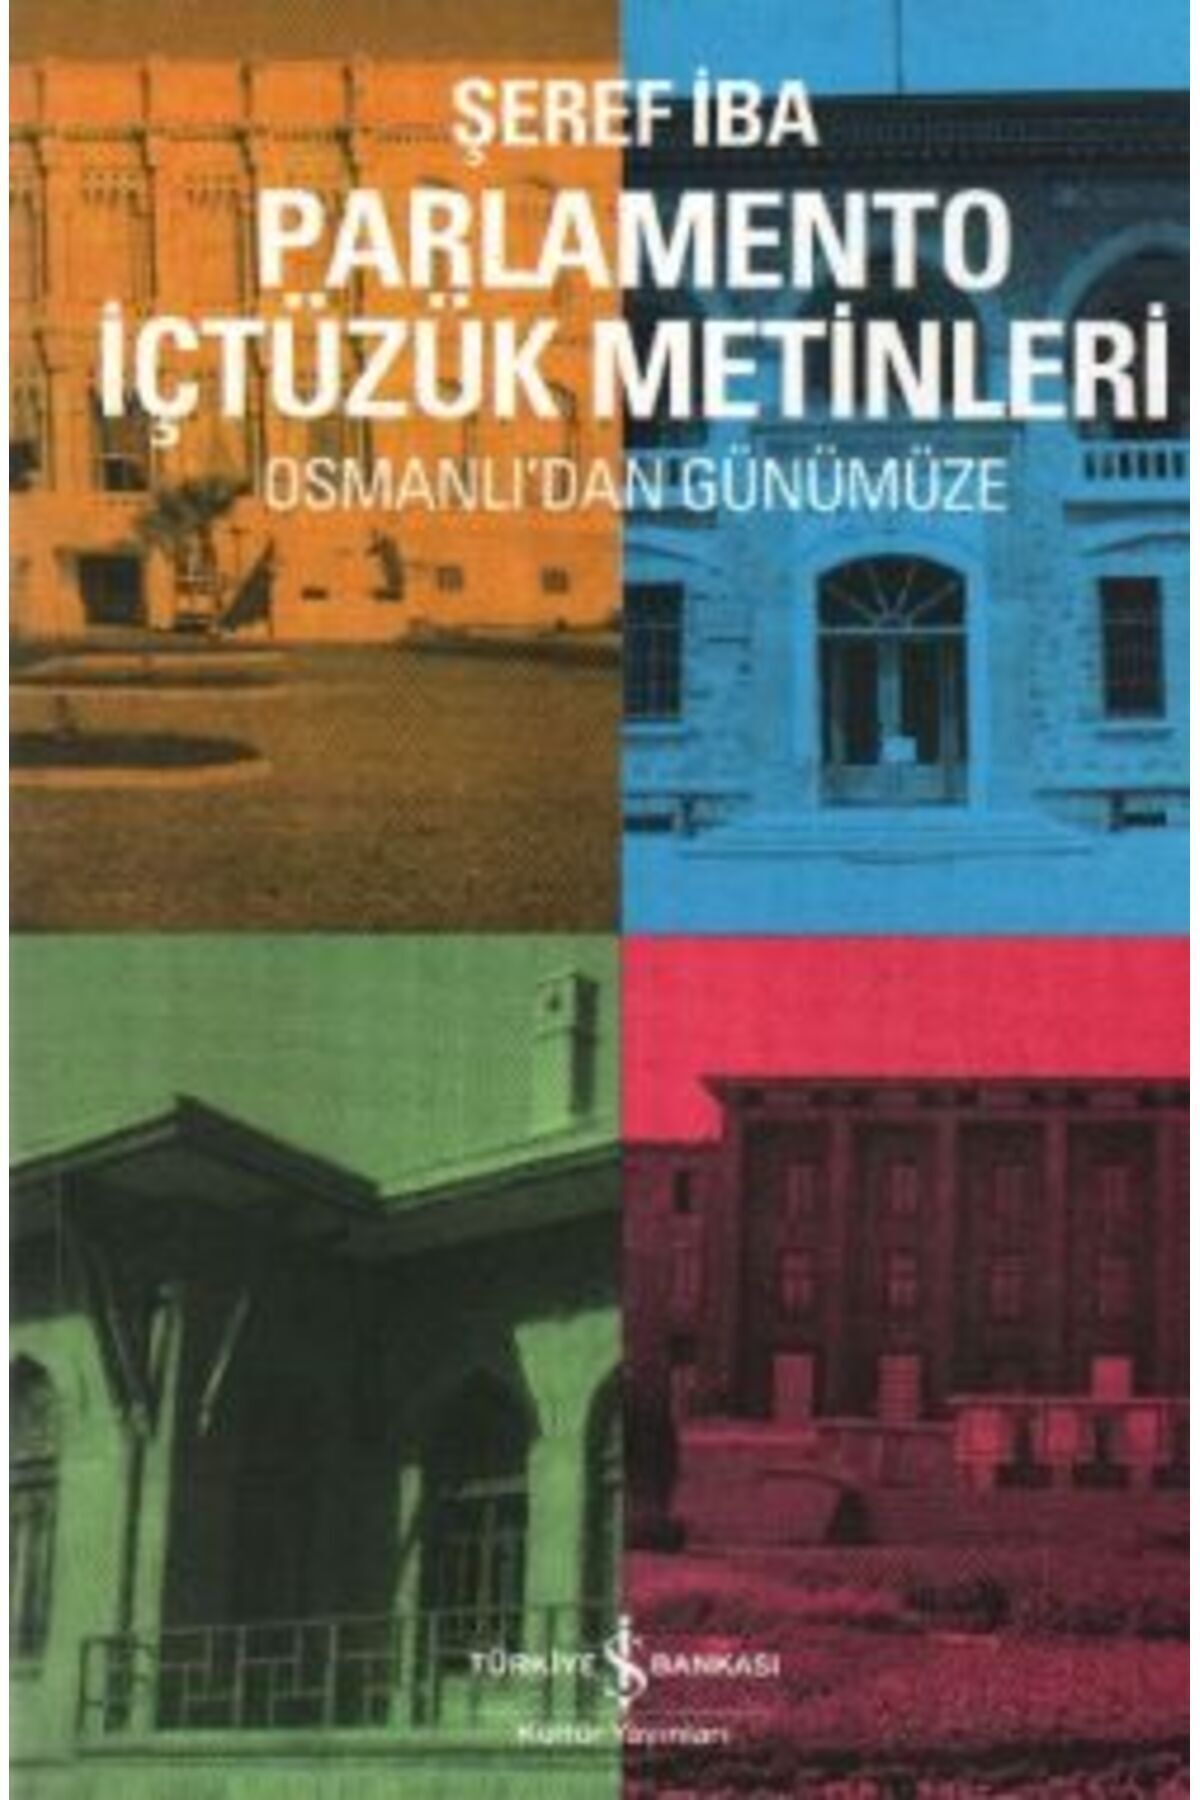 Türkiye İş Bankası Kültür Yayınları Osmanlı'dan Günümüze Parlamento İçtüzük Metinleri